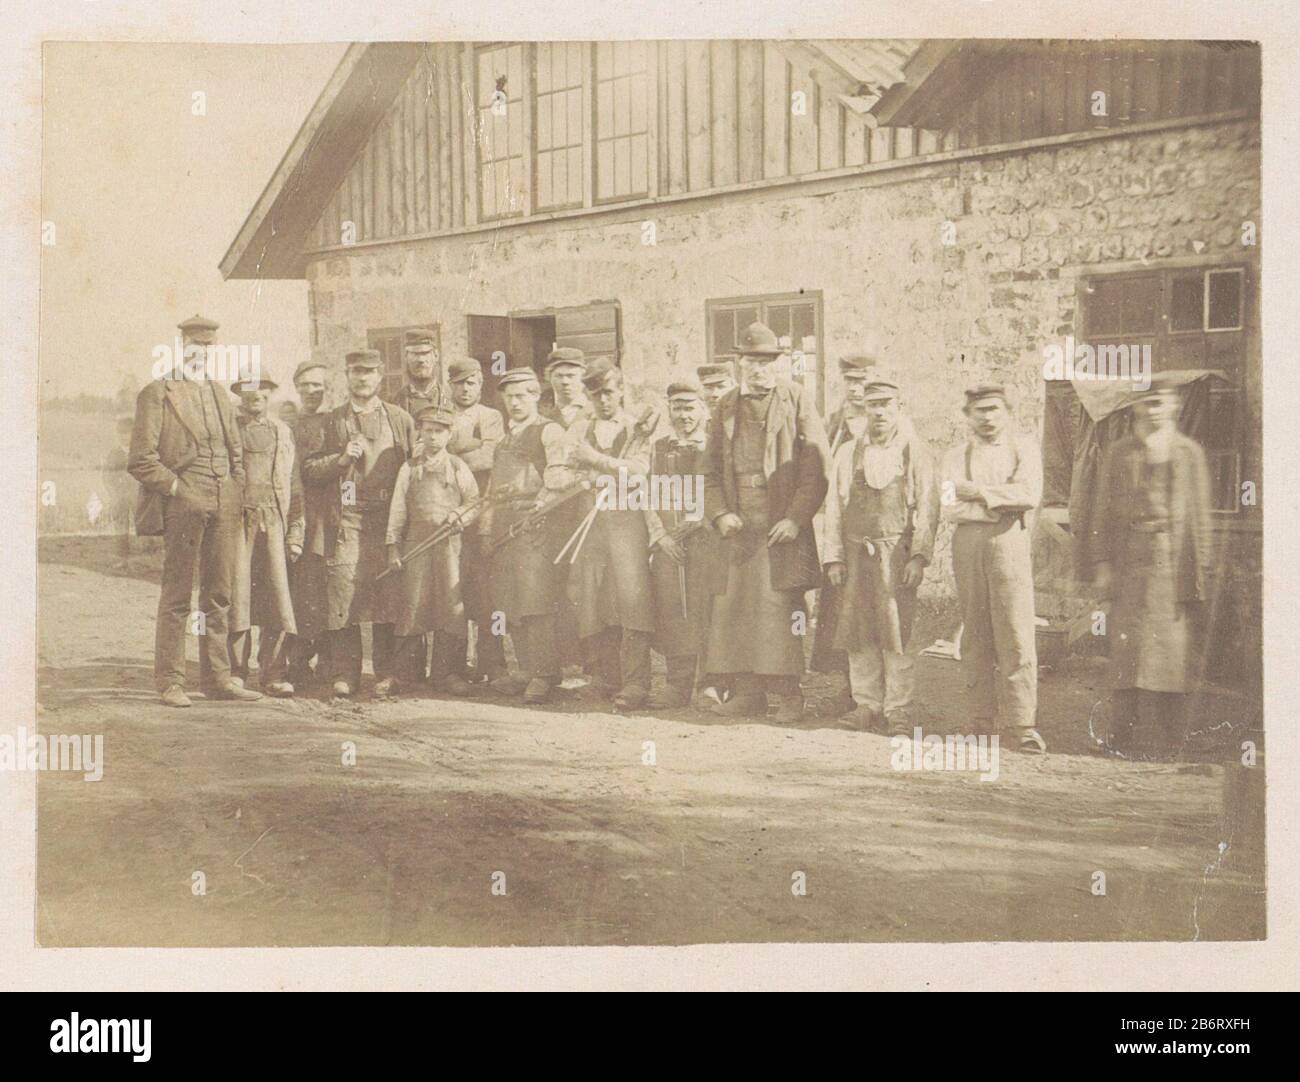 Groepsportret van werksemers voor een werkplaats Arbetspersonaten vir Wikmanshyttan (titel op object) Een groep mannen posseert voor een werkplaats, Stockfoto